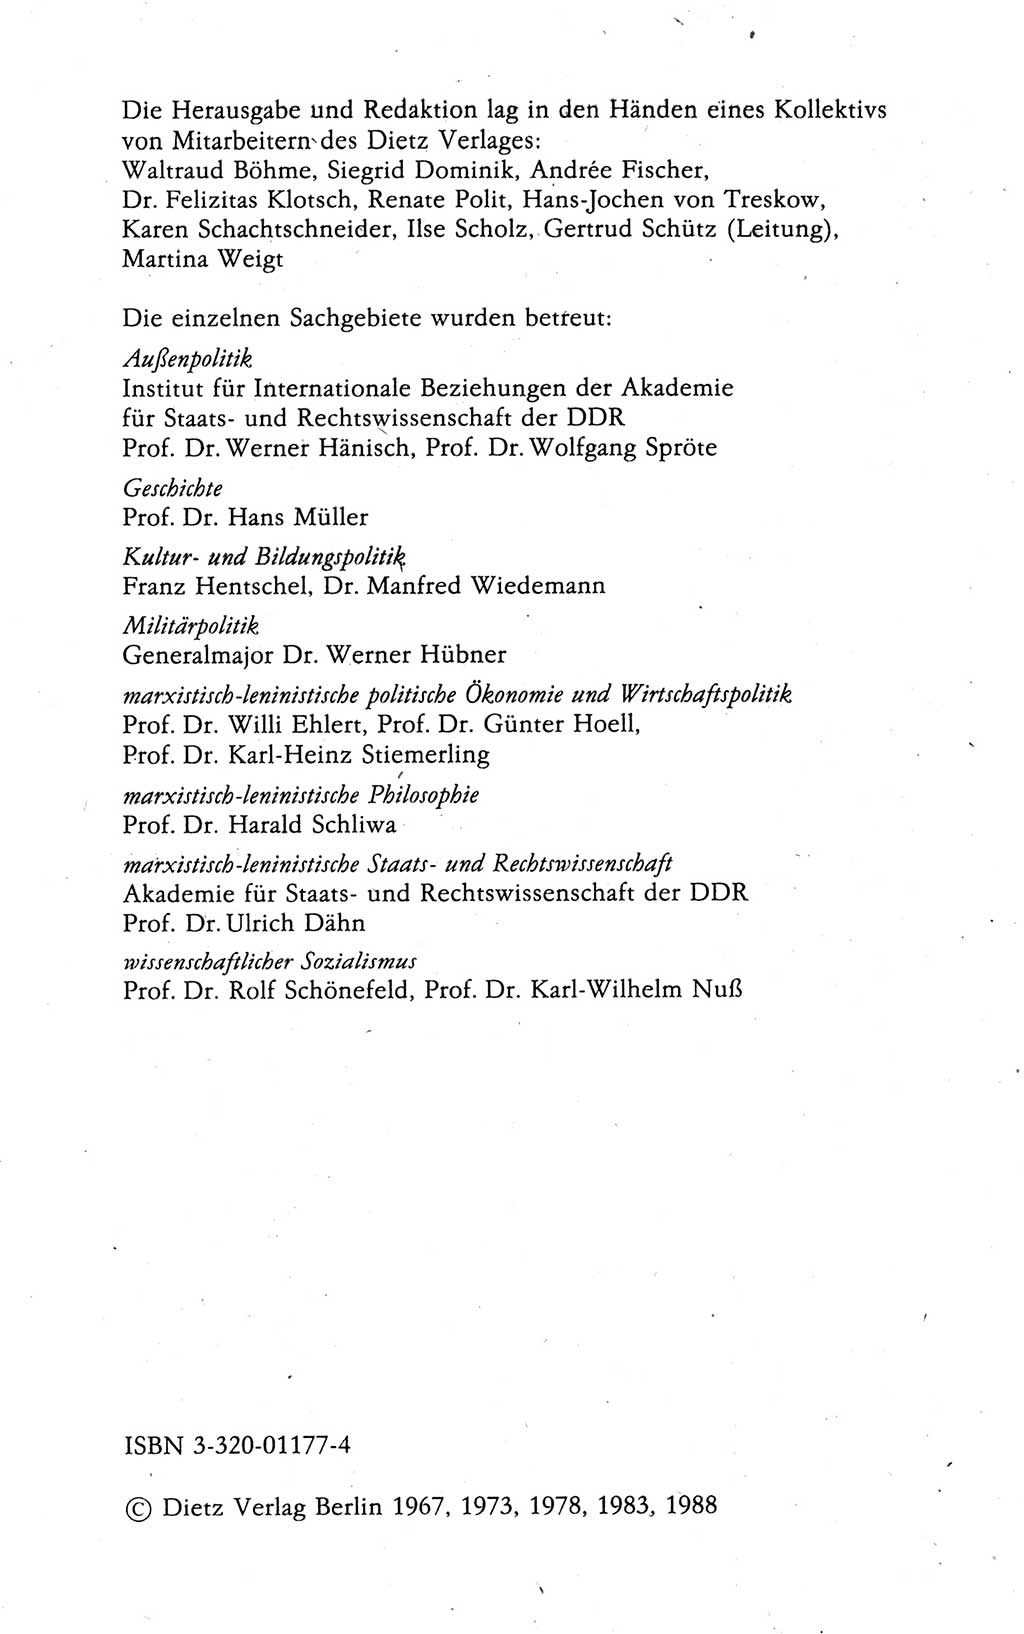 Kleines politisches Wörterbuch [Deutsche Demokratische Republik (DDR)] 1988, Seite 4 (Kl. pol. Wb. DDR 1988, S. 4)